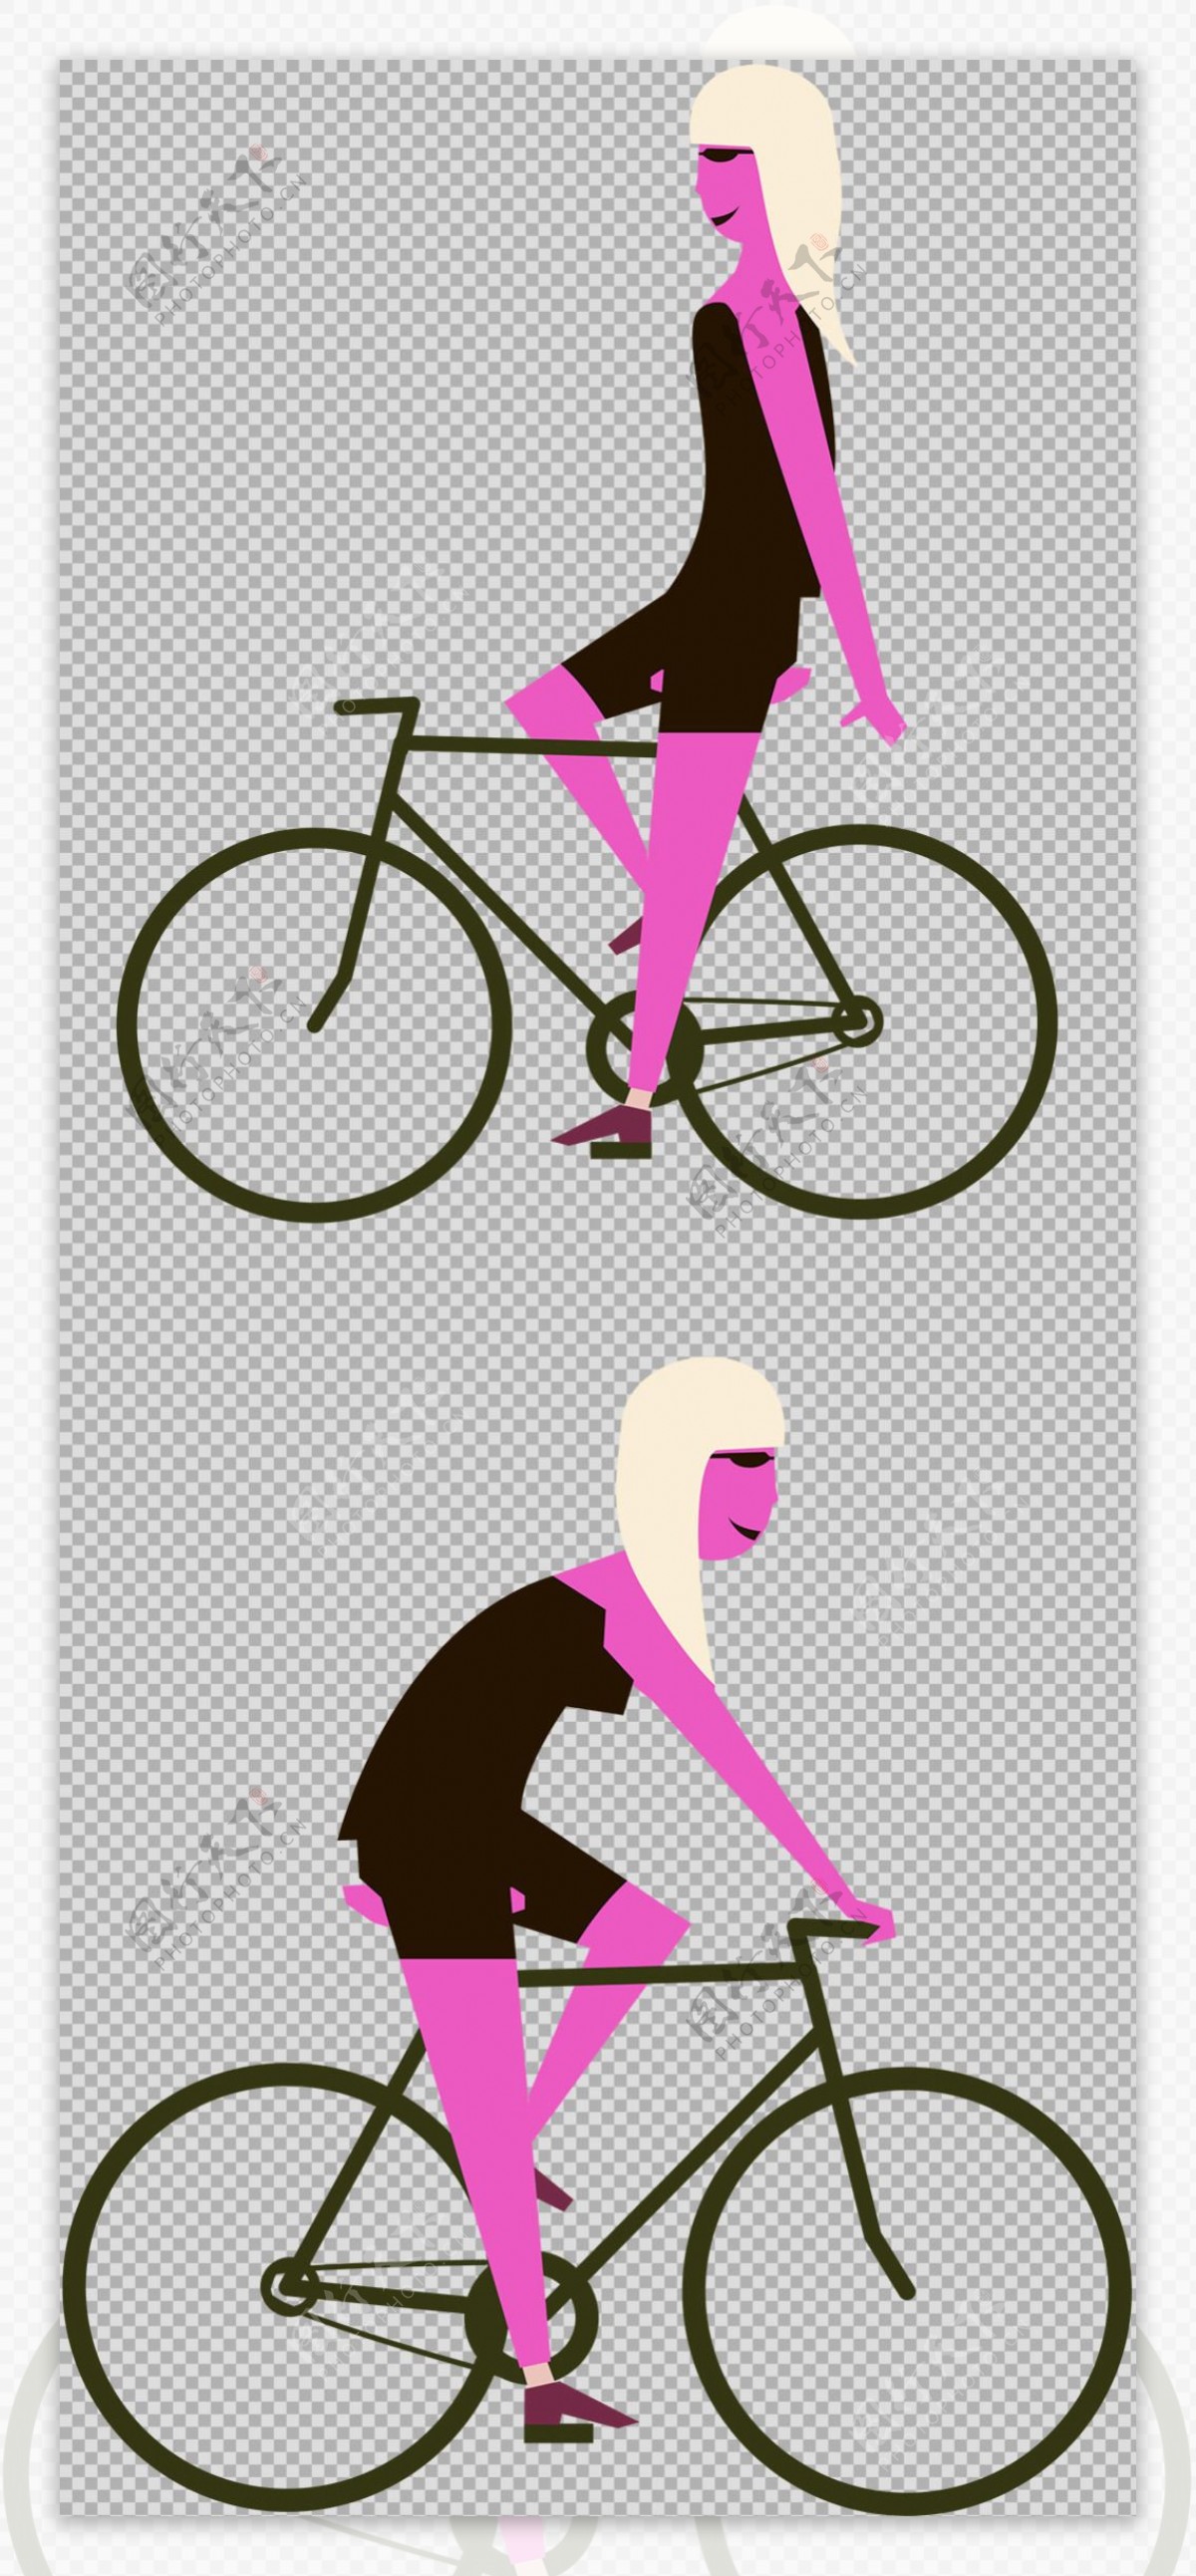 捷世樂單車休閒 jesler bicycles